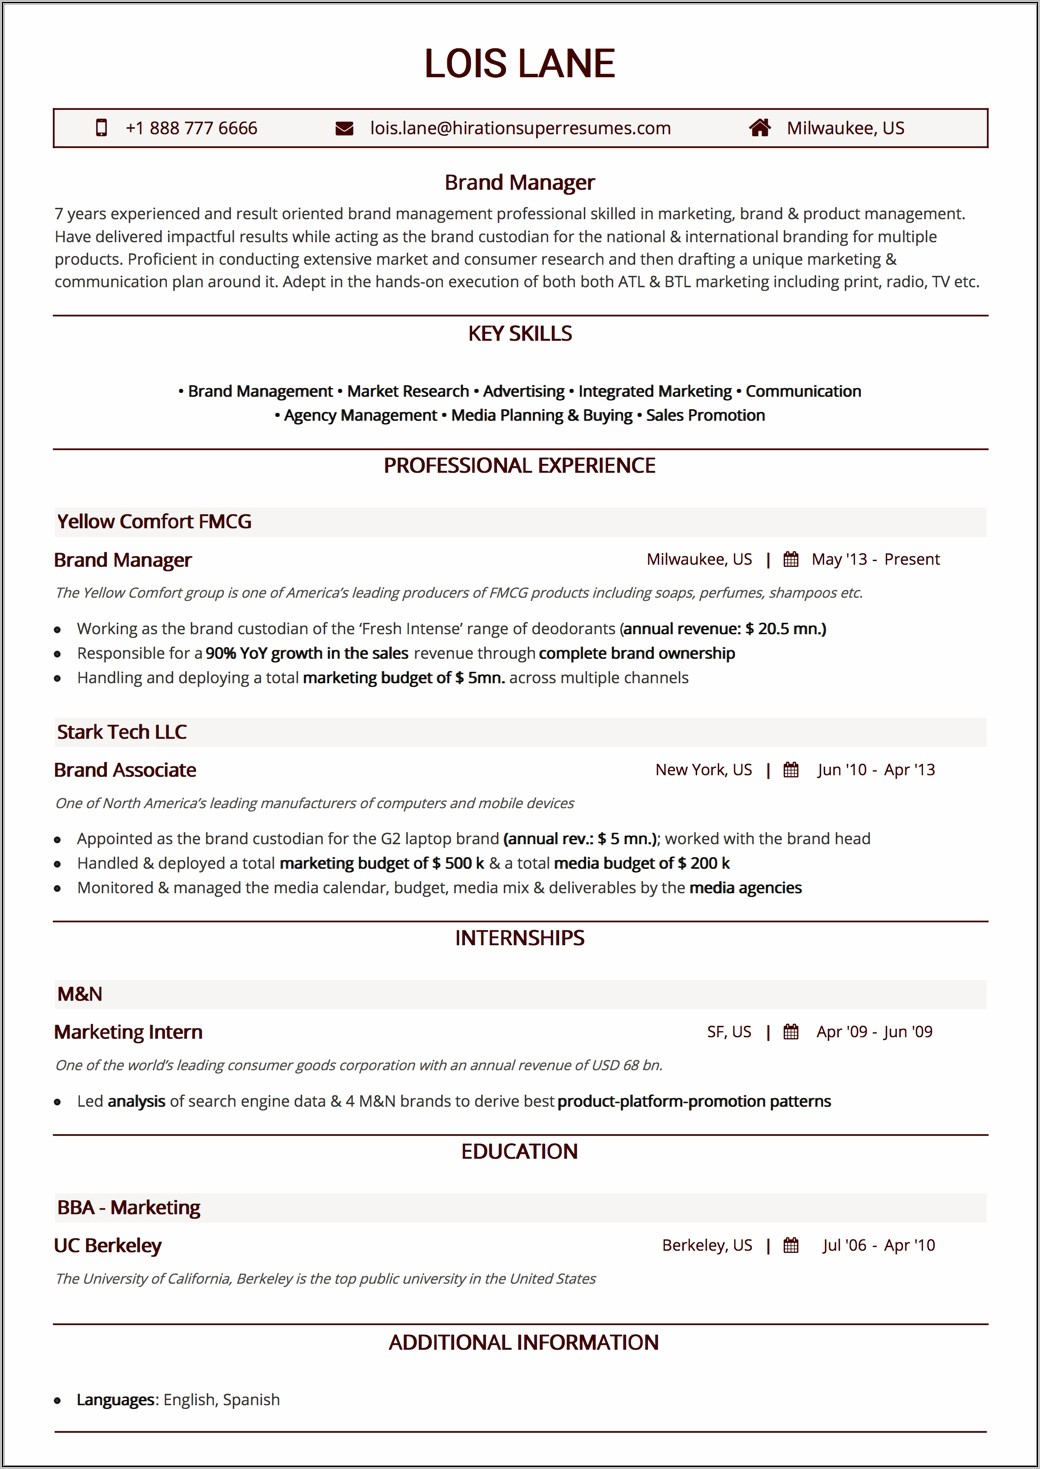 Resume For Data Analytics Jobs